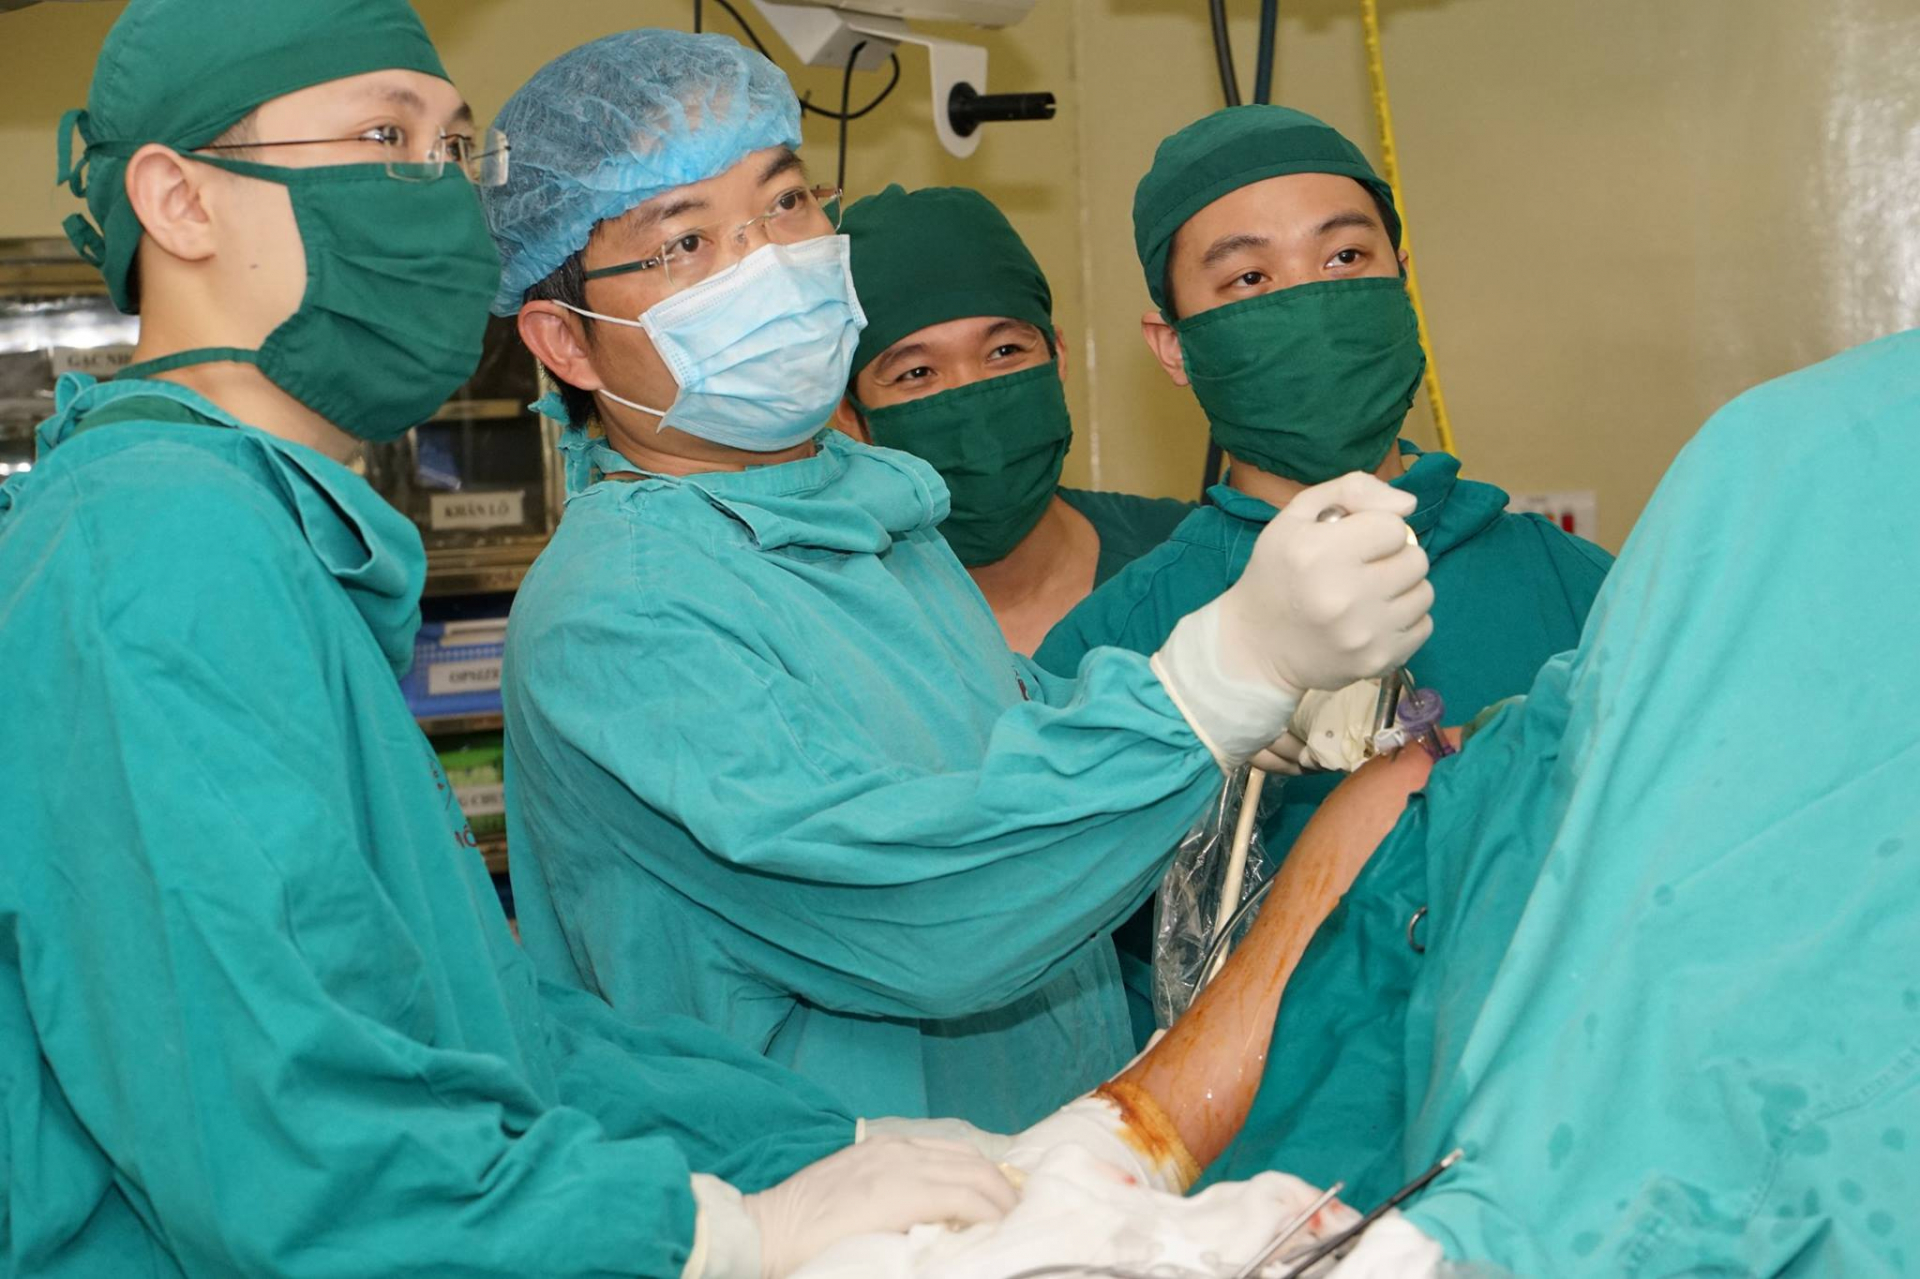 Bác sĩ Trần Trung Dũng (thứ 2 từ trái sang) đang phẫu thuật điều trị thoái hóa khớp cho người bệnh